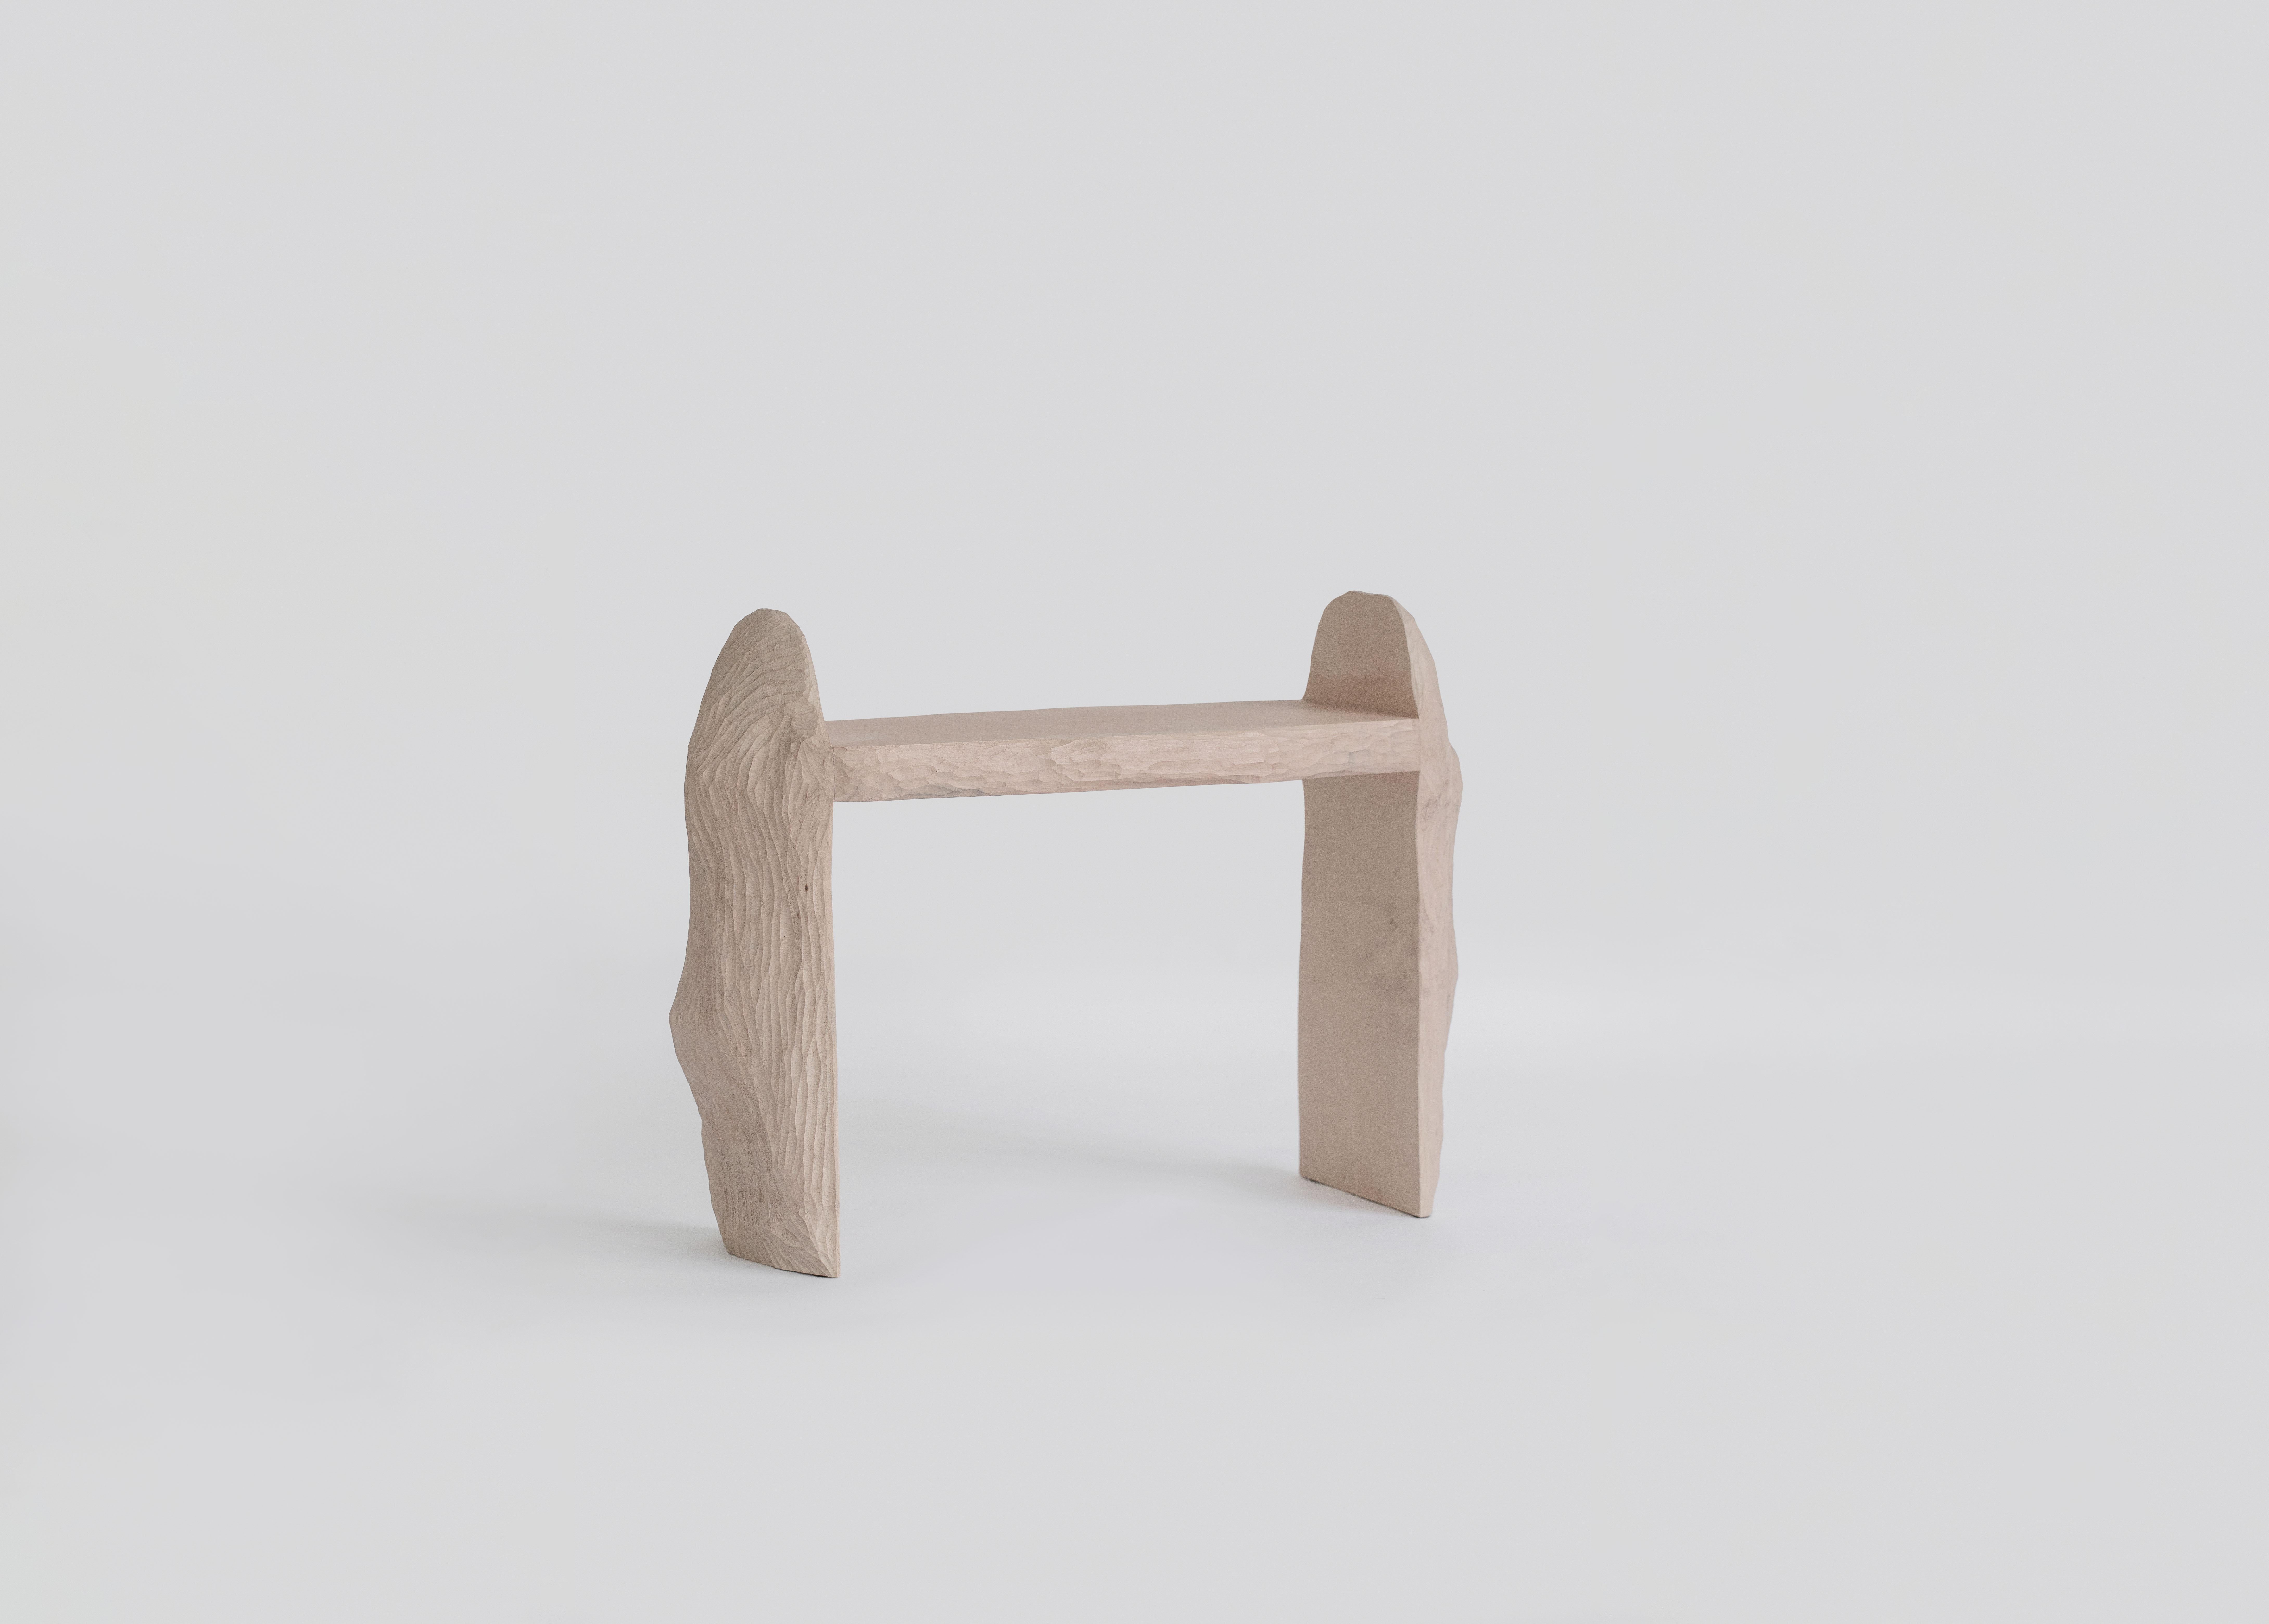 Intuitive Archaisme ist eine Möbelkollektion, deren Design- und Herstellungsprozess auf dem primitiven Instinkt des Zusammenfügens von Formen zu einer Struktur basiert. Das Holz wird mit einem Stechbeitel bearbeitet, wobei die Struktur des Holzes